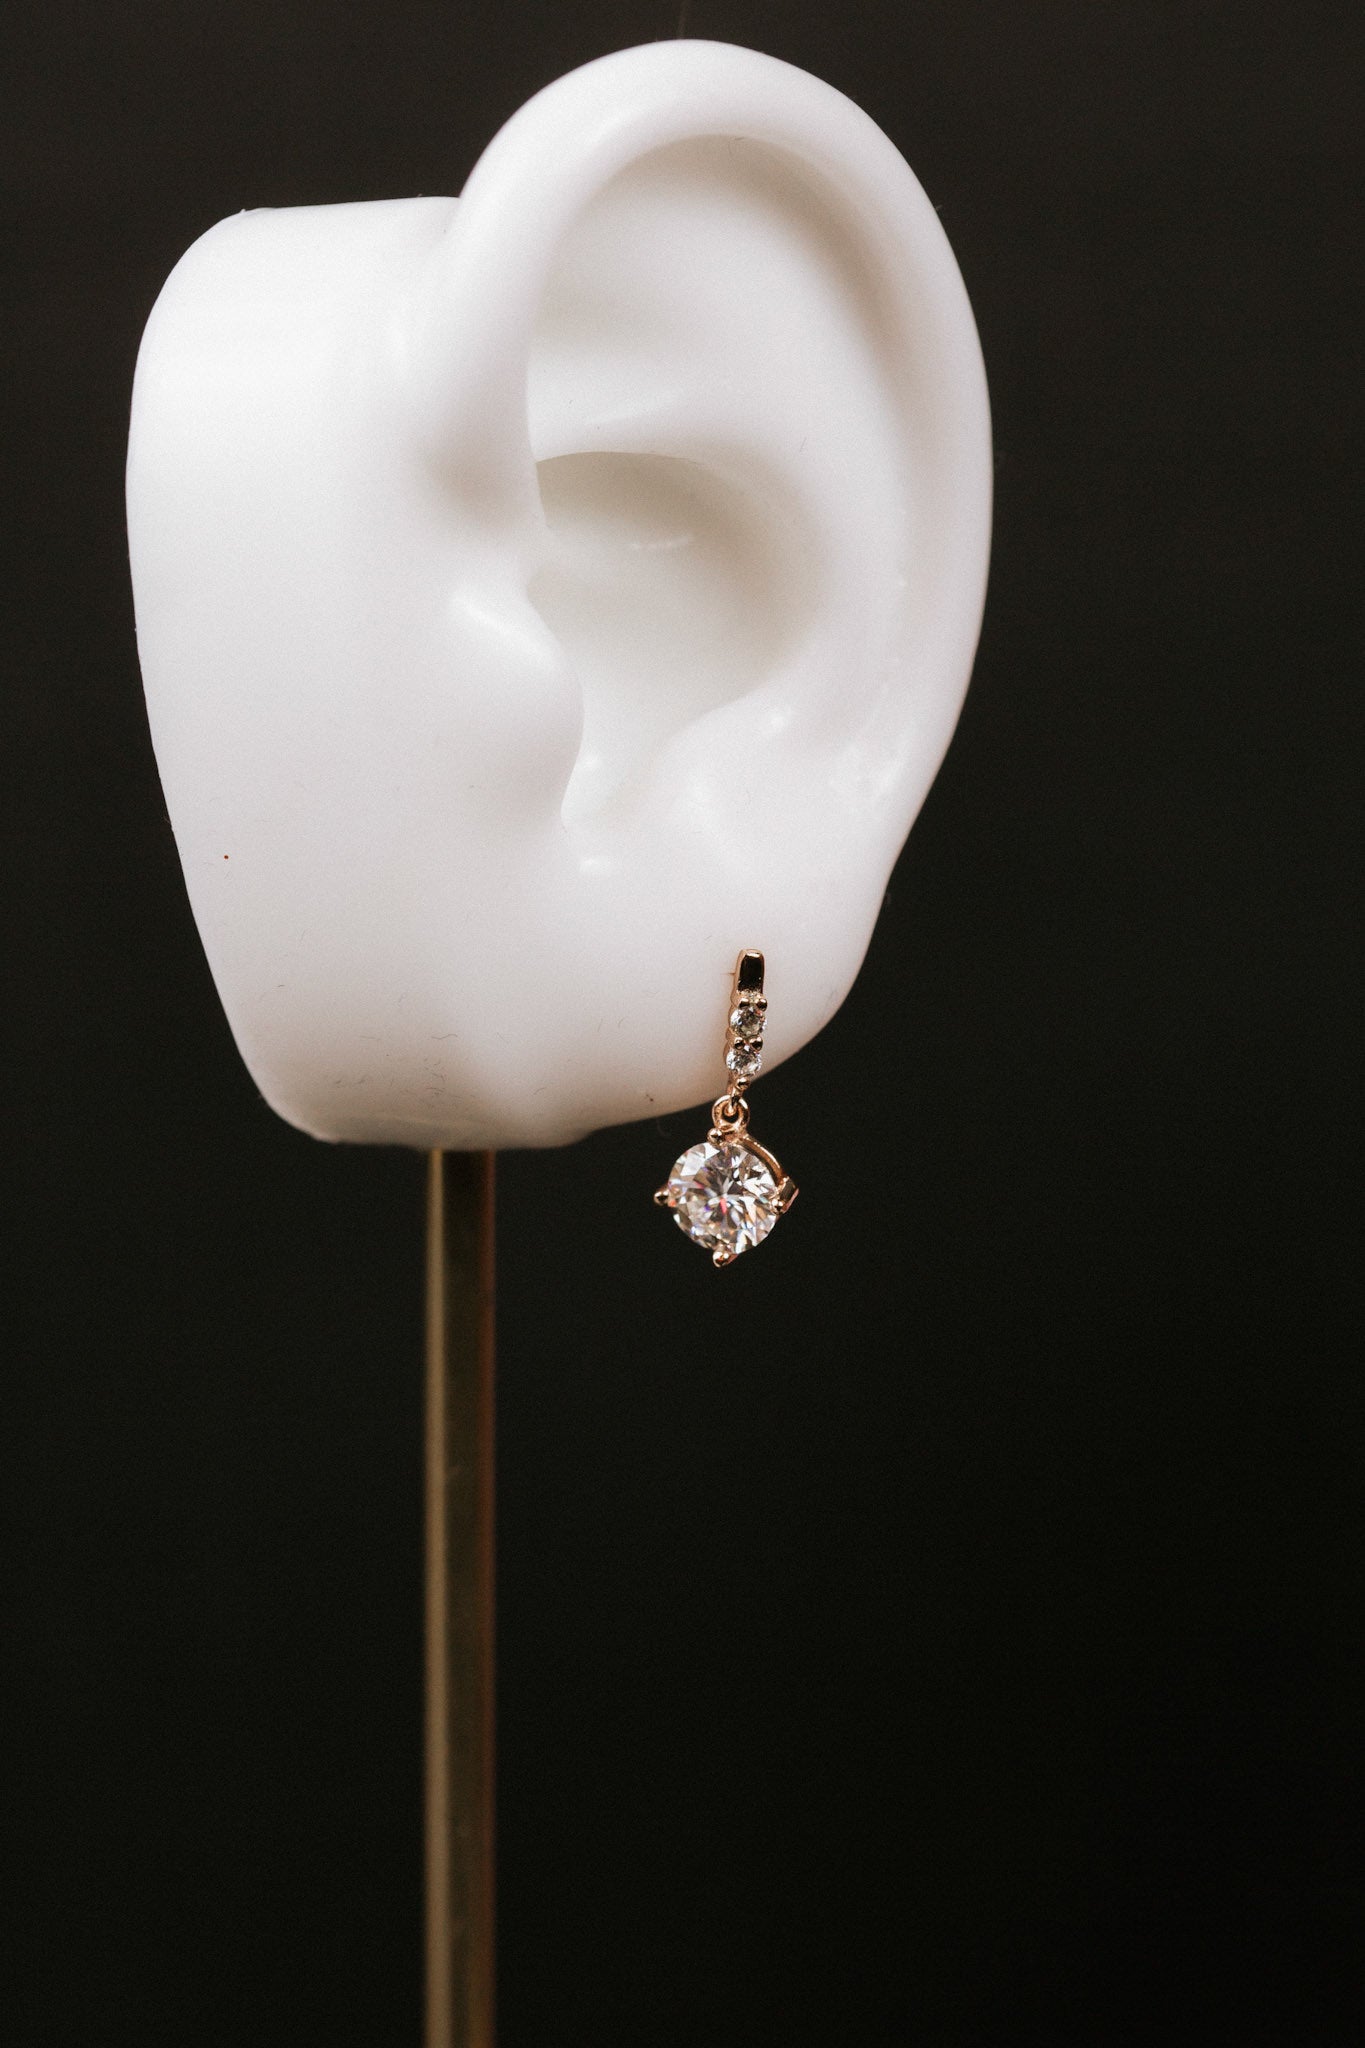 1 carat Rose Gold Moissanite Earrings